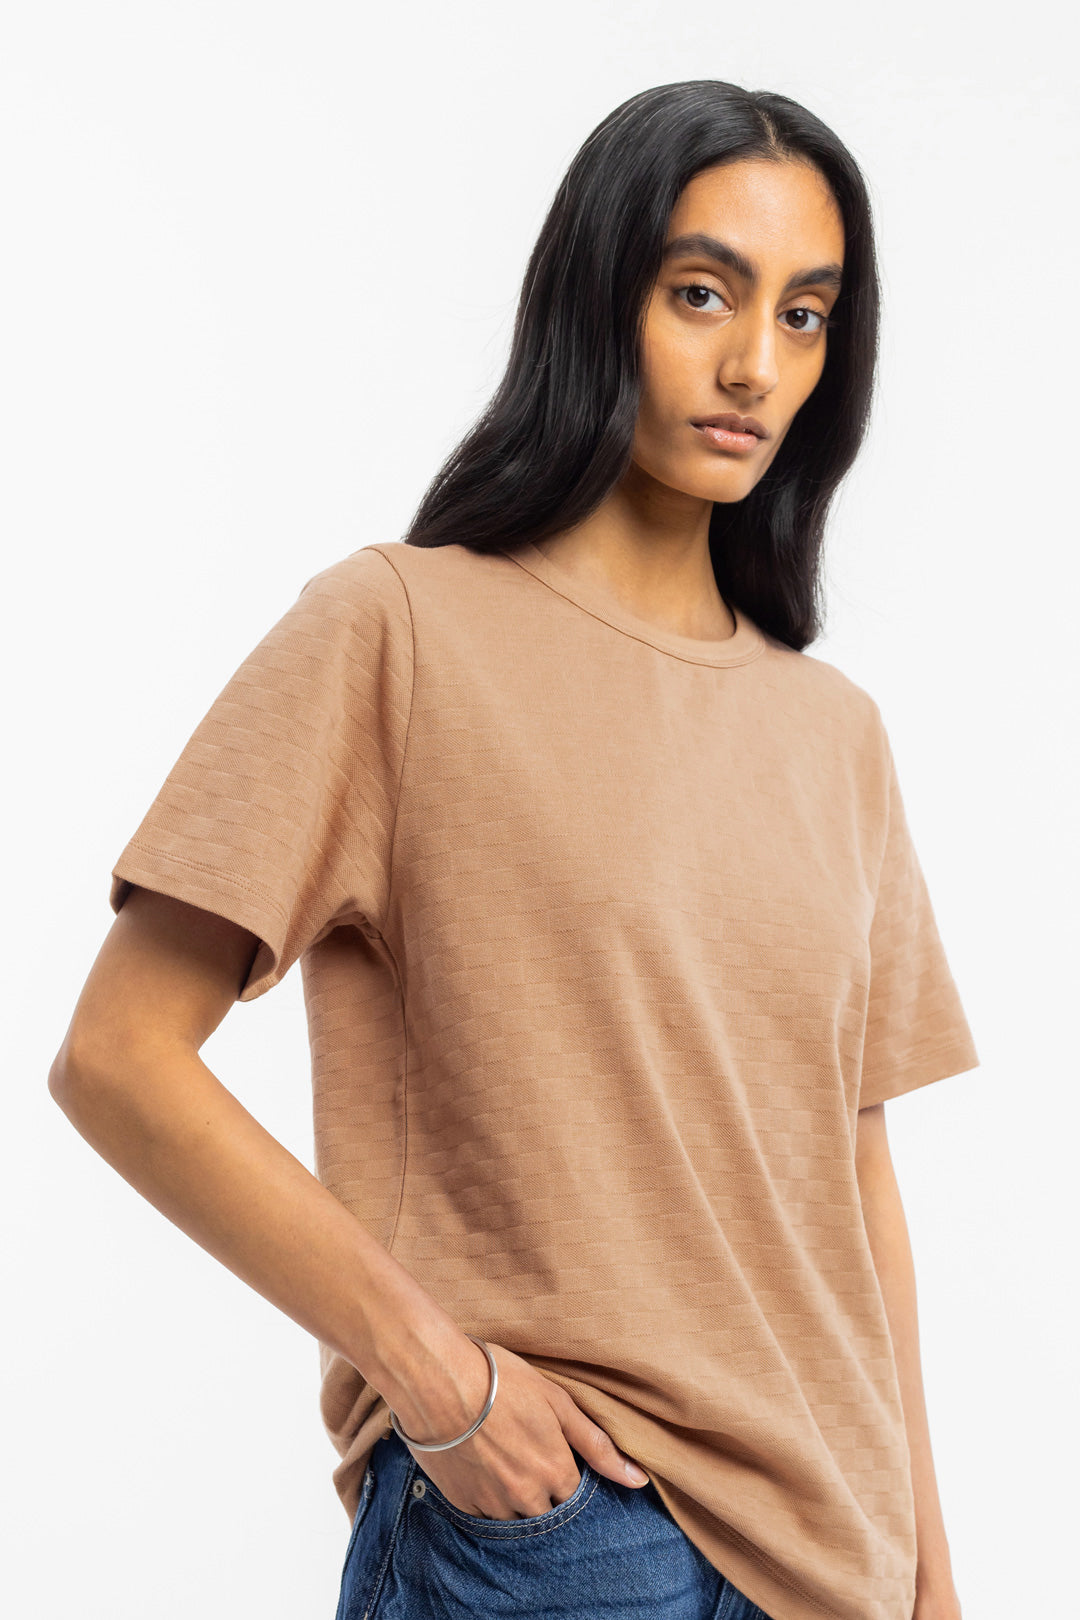 Karamellfarbenes T-Shirt aus 100% Bio-Baumwolle von Rotholz